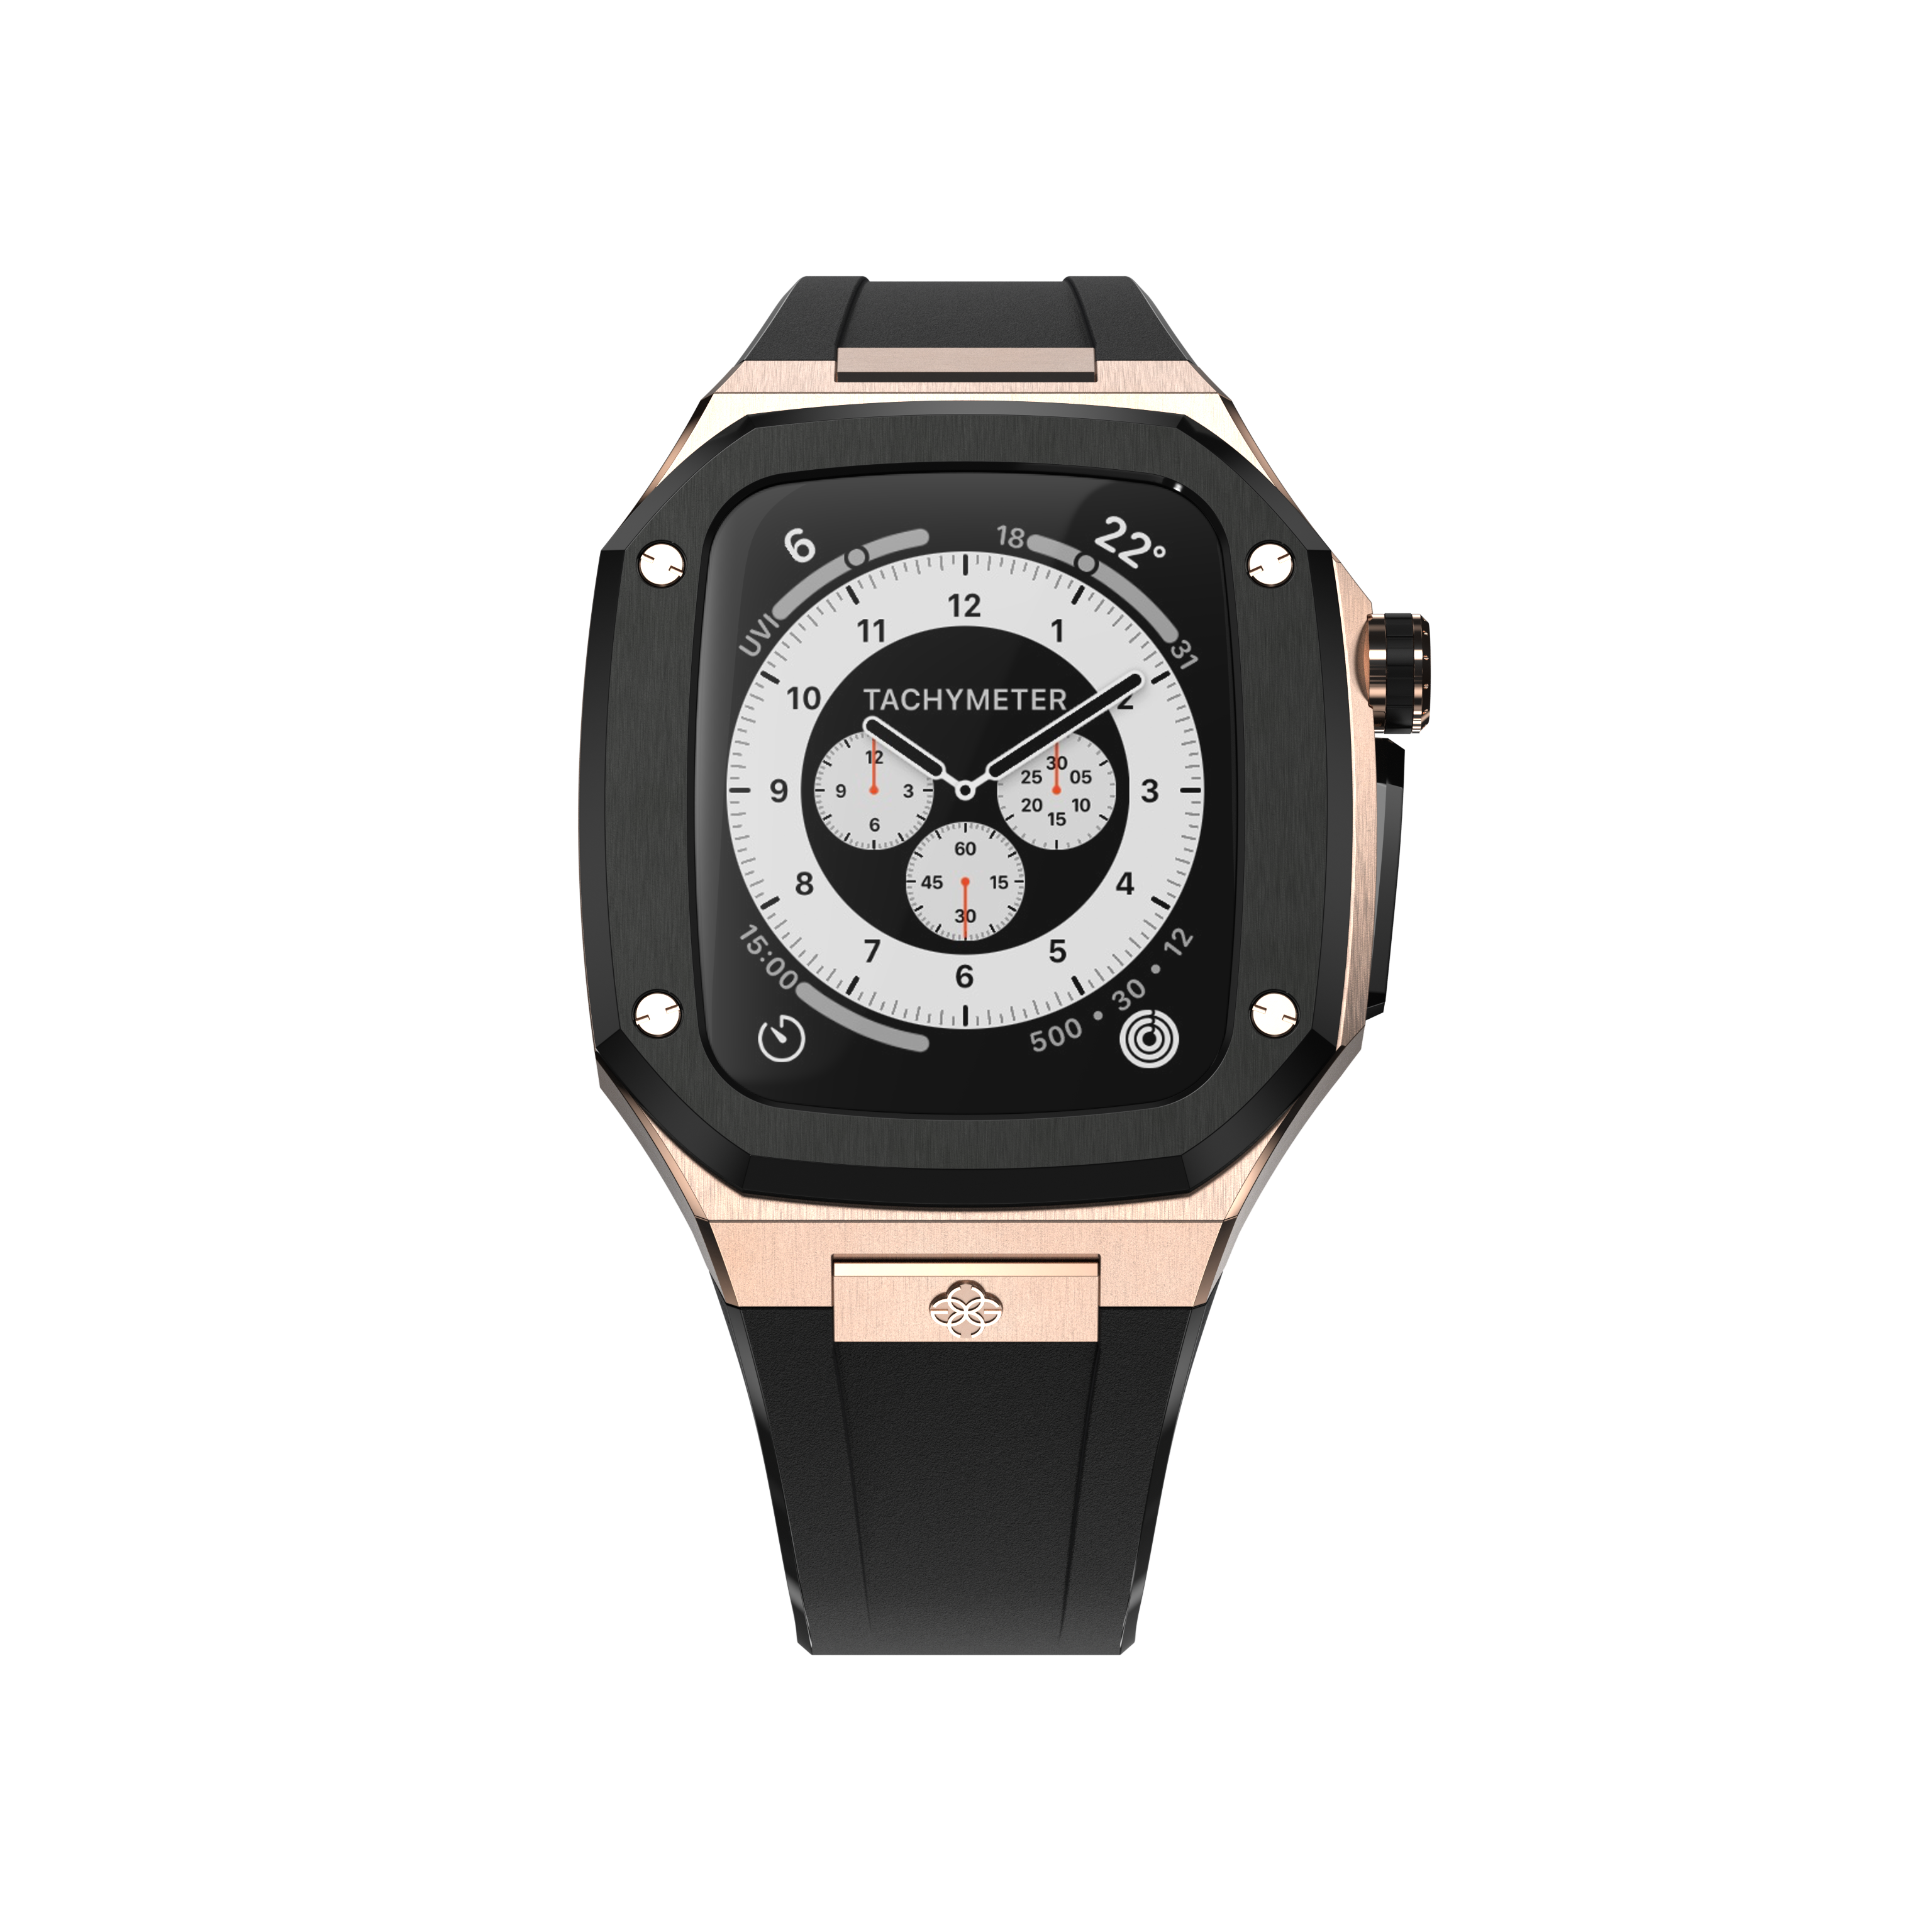 Чехол Golden Concept WC-SP40-RG-BK для смарт-часов Apple Watch Series 6 40mm черный